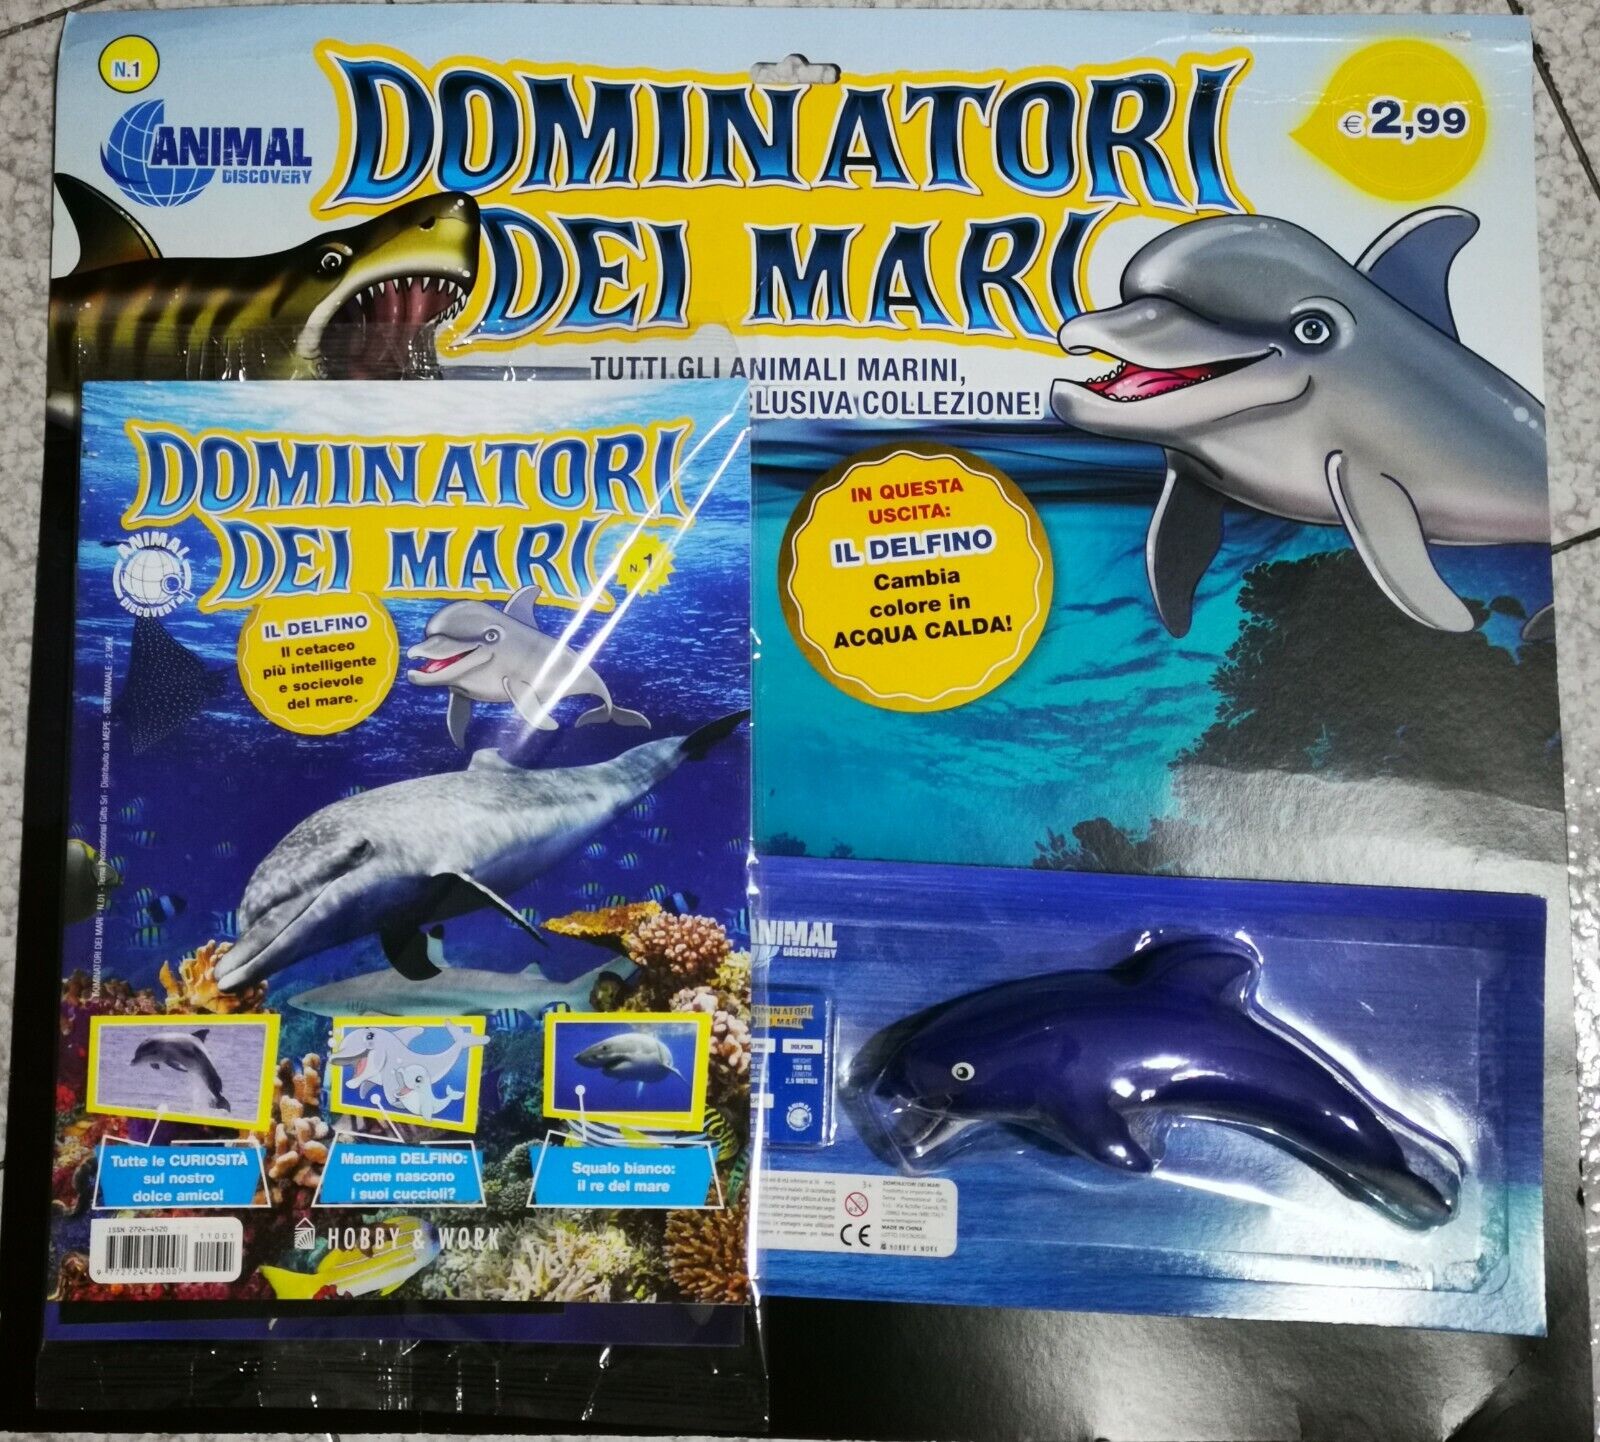 Dominatori dei mari - 1a uscita - Il delfino - Hobby & Work